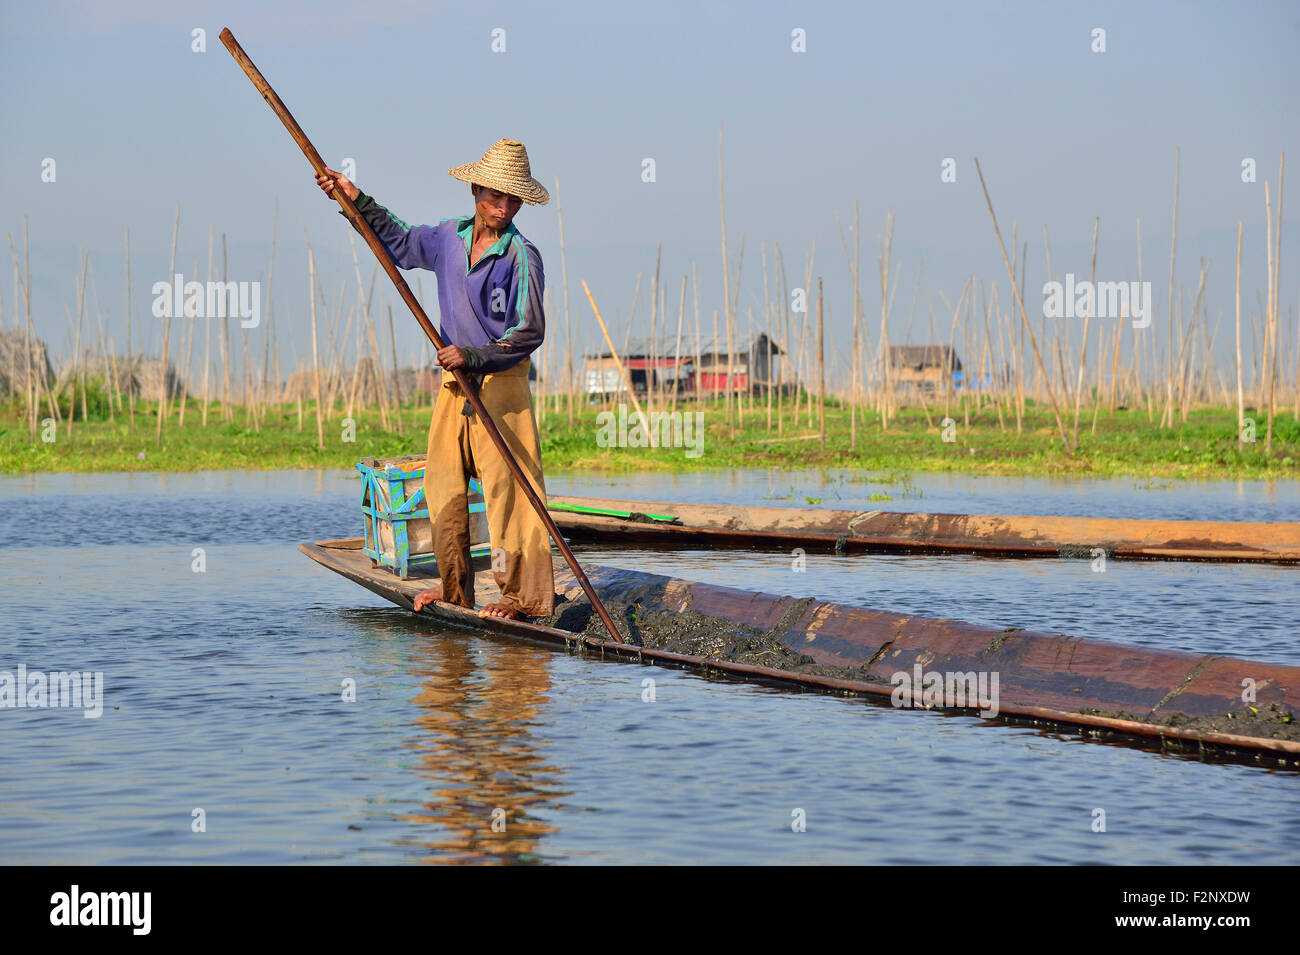 Landwirt auf dem Inle See sammelt See - Unkraut von unten Wasser zurück zu seinem schwimmenden Garten zu nehmen als Kompost, Myanmar, Südostasien zu verwenden Stockfoto